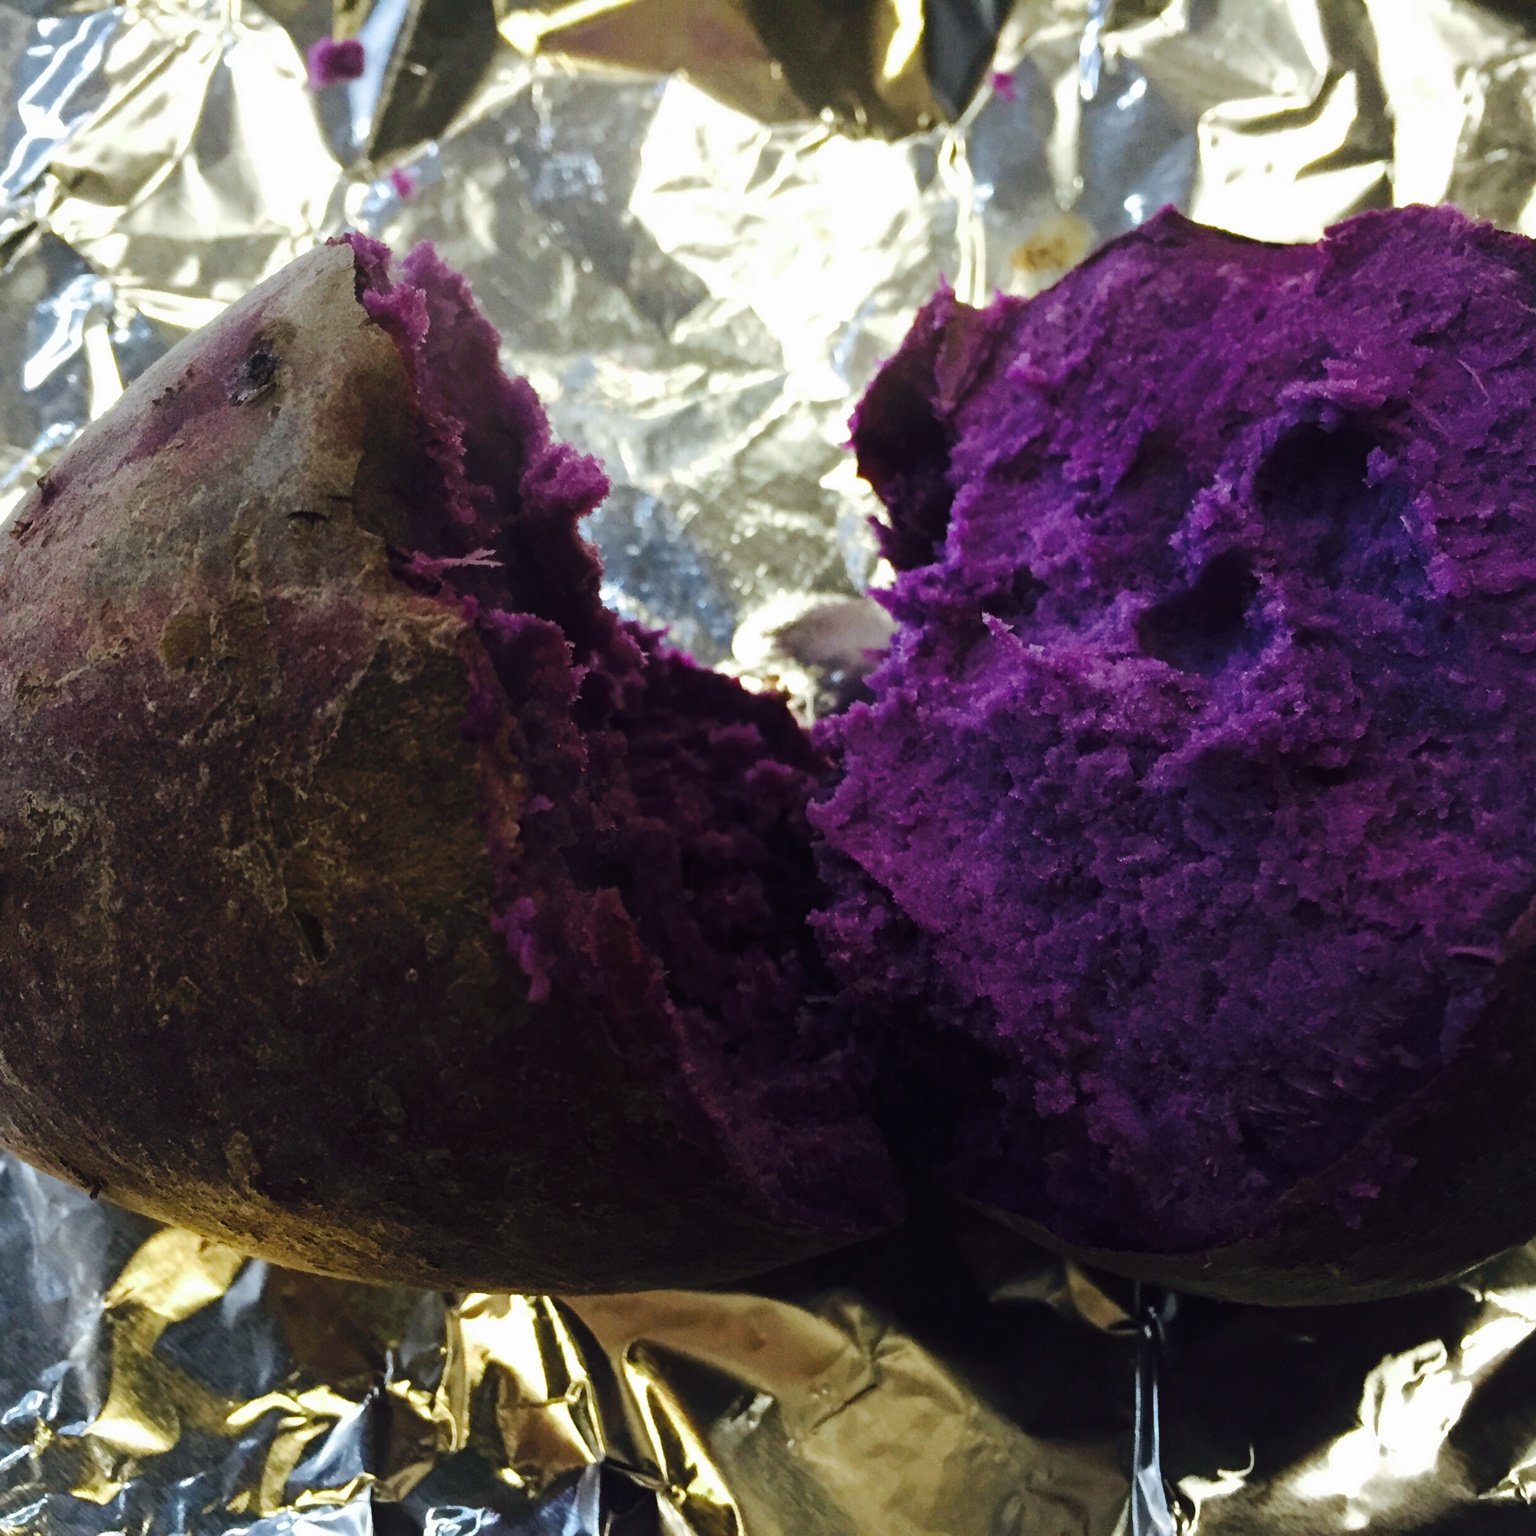 烤紫薯（烤箱版）